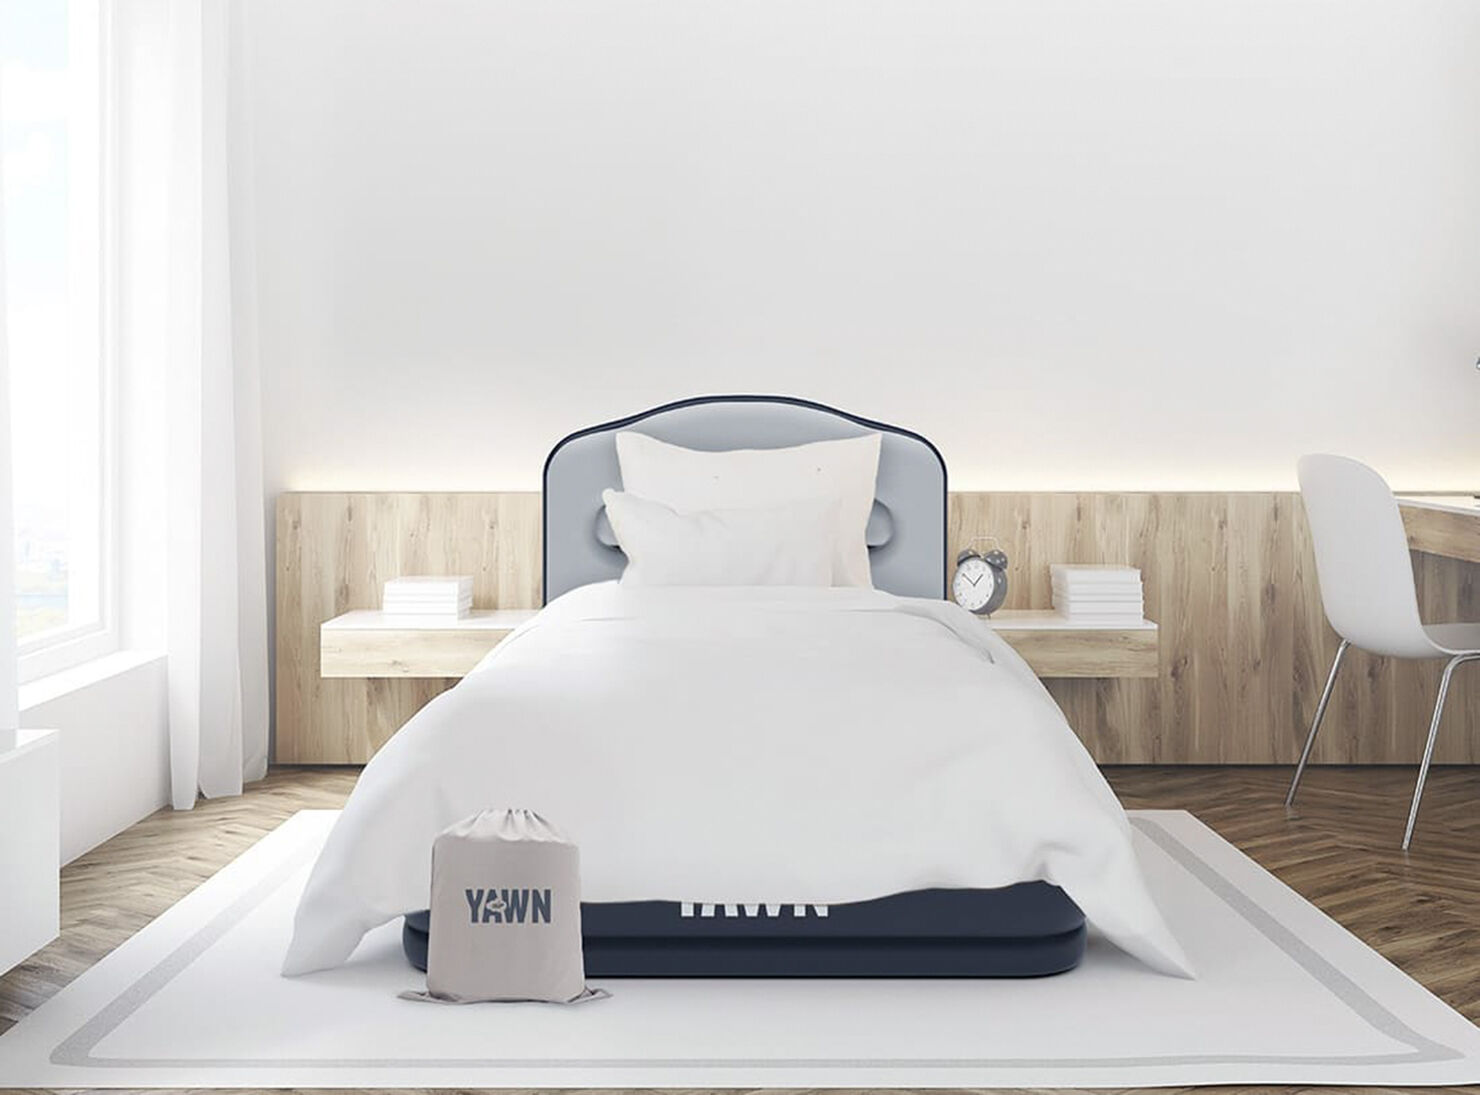 Colchón Inflable Tamaño Single Yawn Air Bed - Sacos de Dormir y Colchones |  Paris.cl